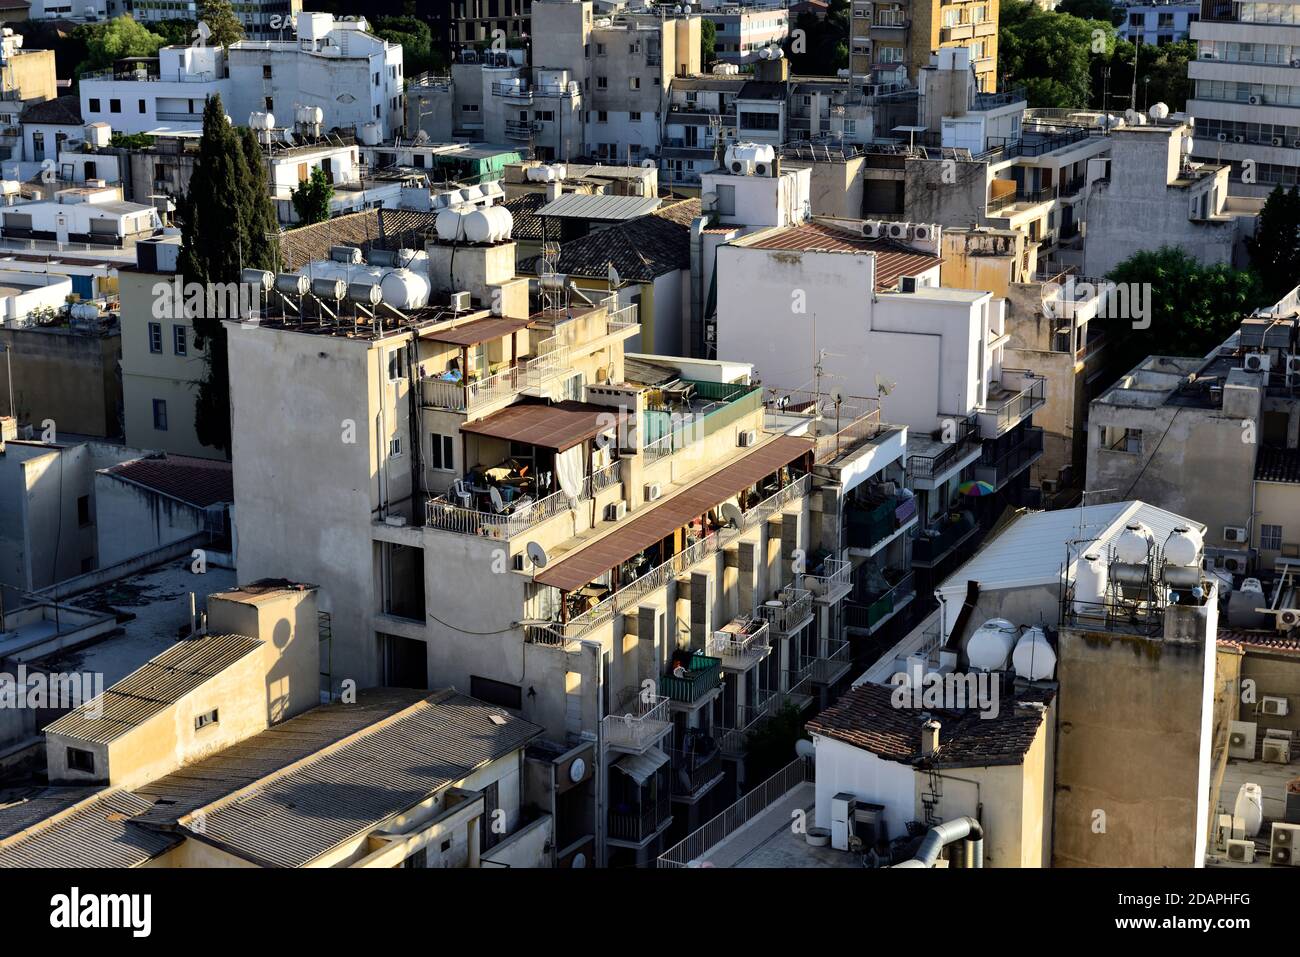 Vista ad alto angolo sui tetti, balconi e edificio della città vecchia Nicosia con solare termico di deposito di acqua calda, Cipro Foto Stock